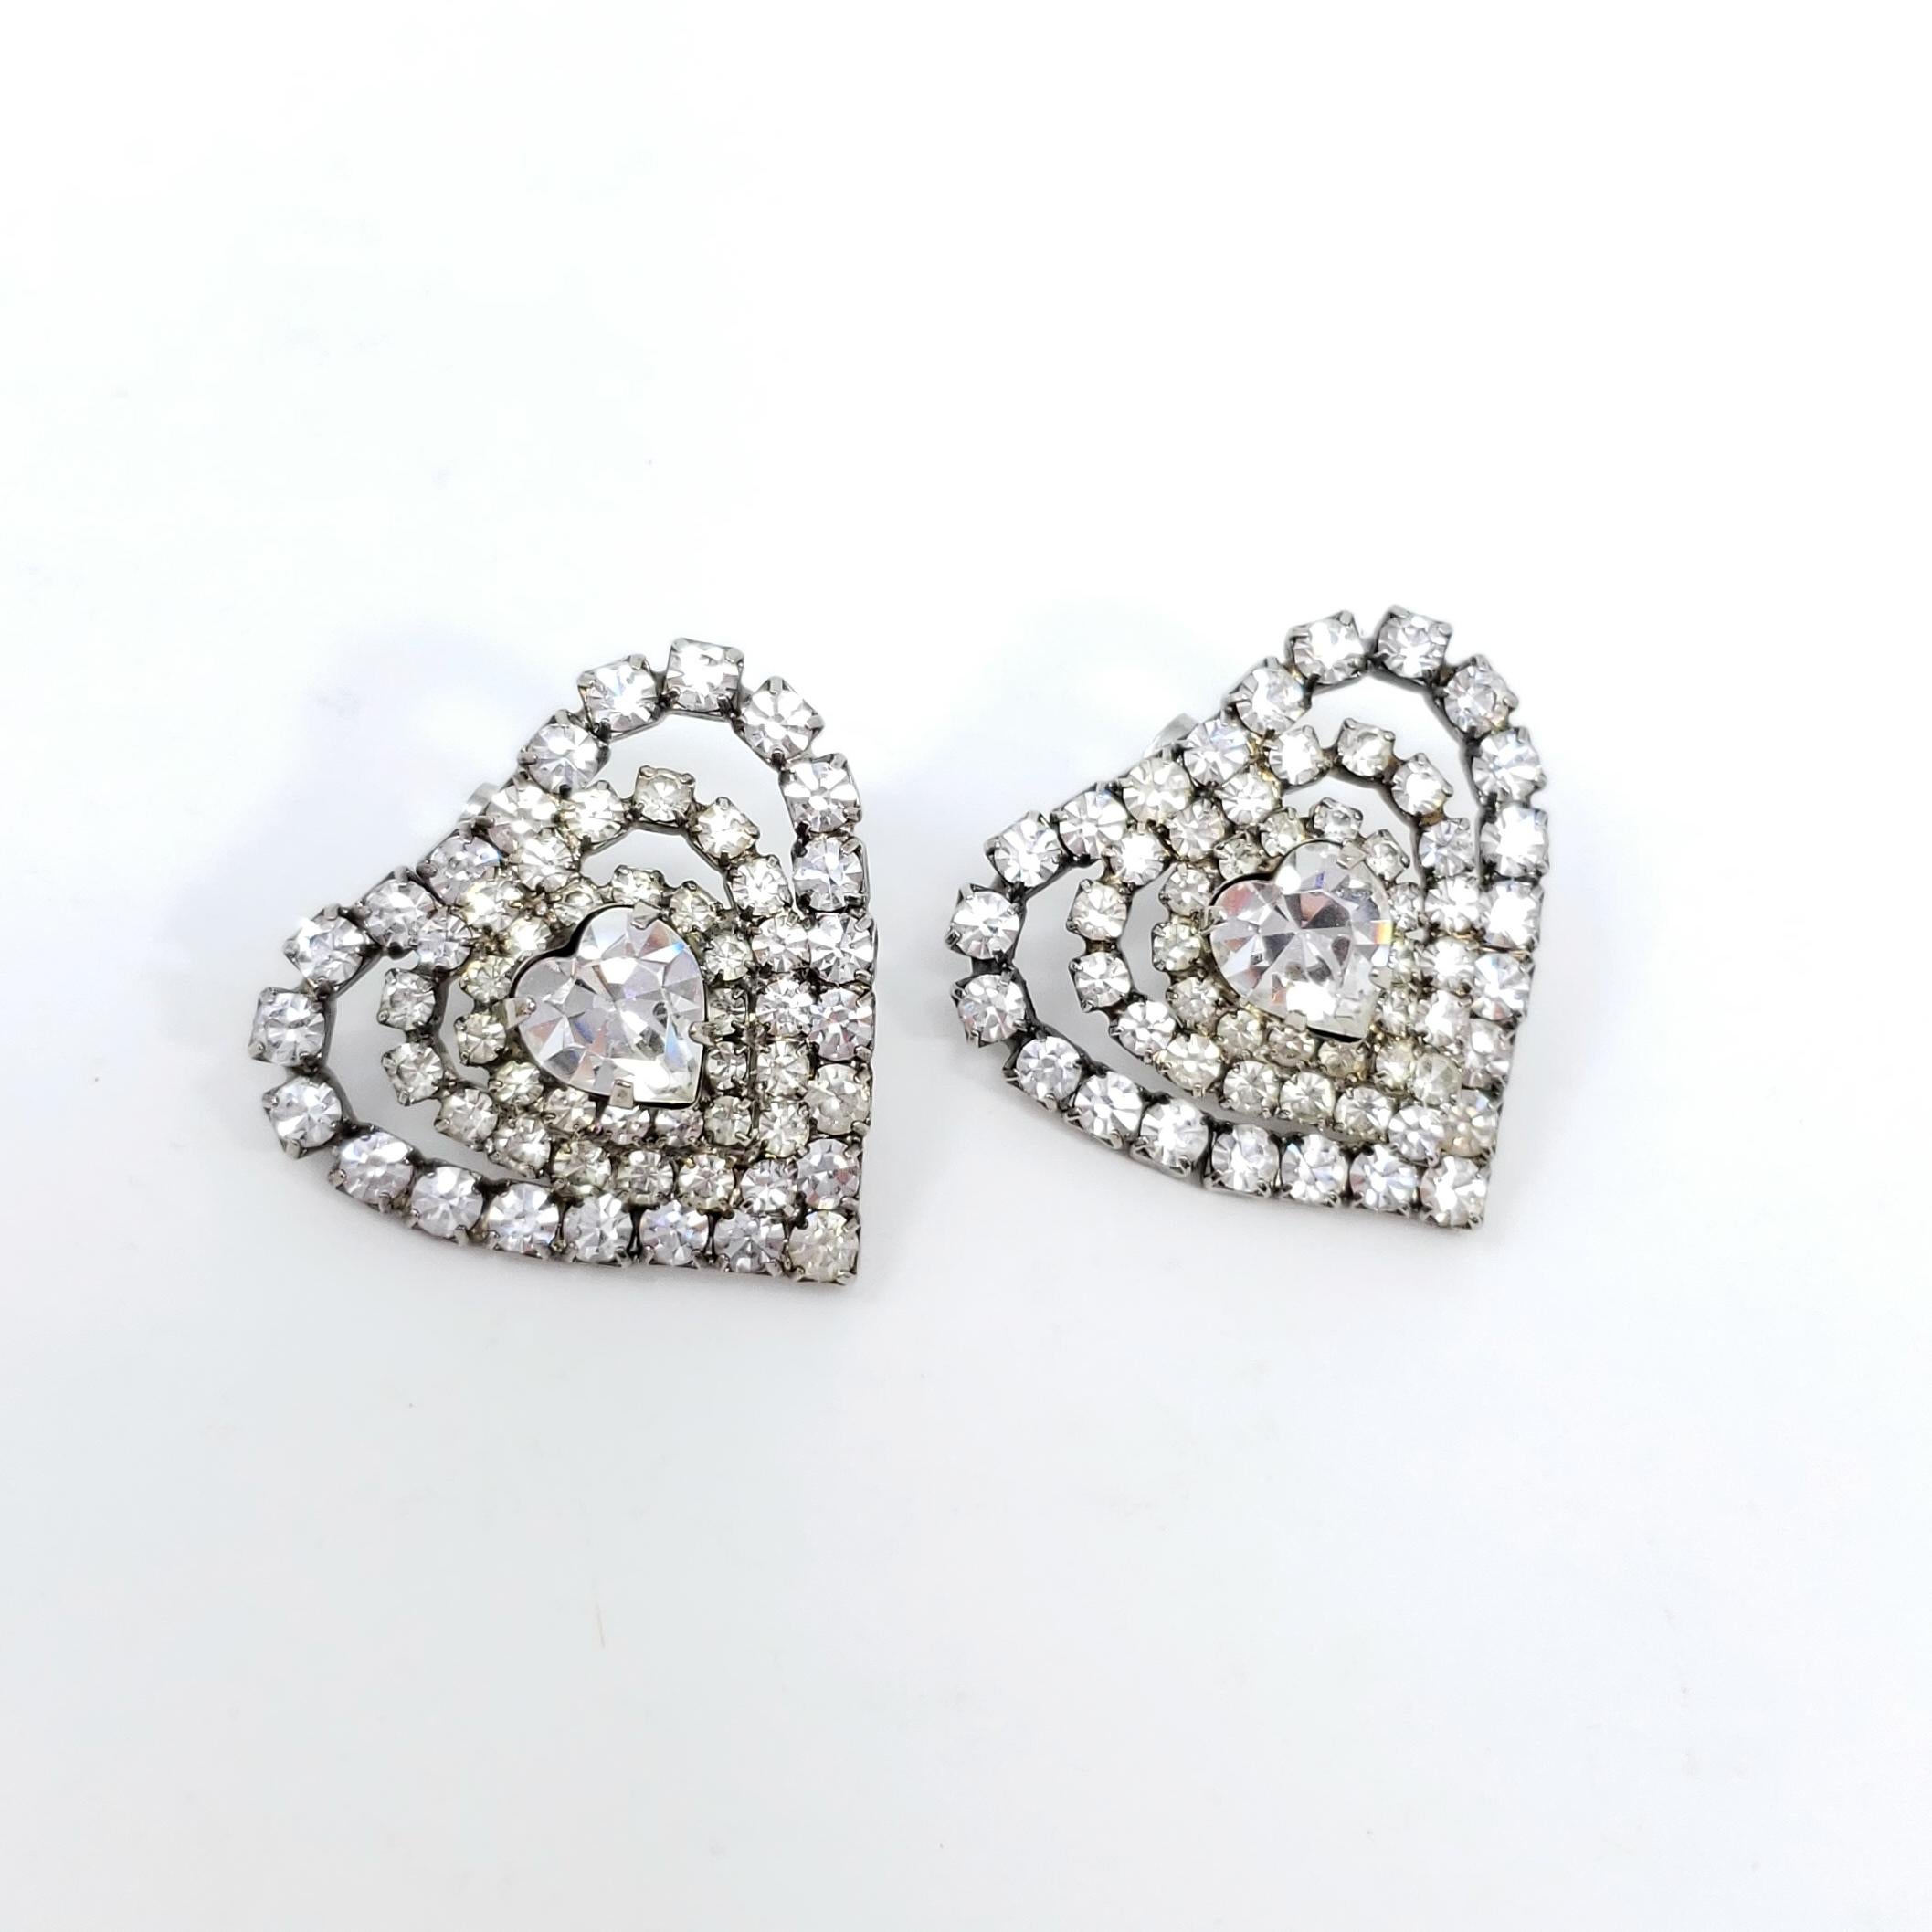 Ein stilvolles Paar Vintage-Ohrringe! Diese glamourösen Herzen sind mit schillernden, klaren Kristallen in silberfarbener Zackenfassung verziert.

Rückseiten der Post. Um die Mitte des 19. Jahrhunderts.